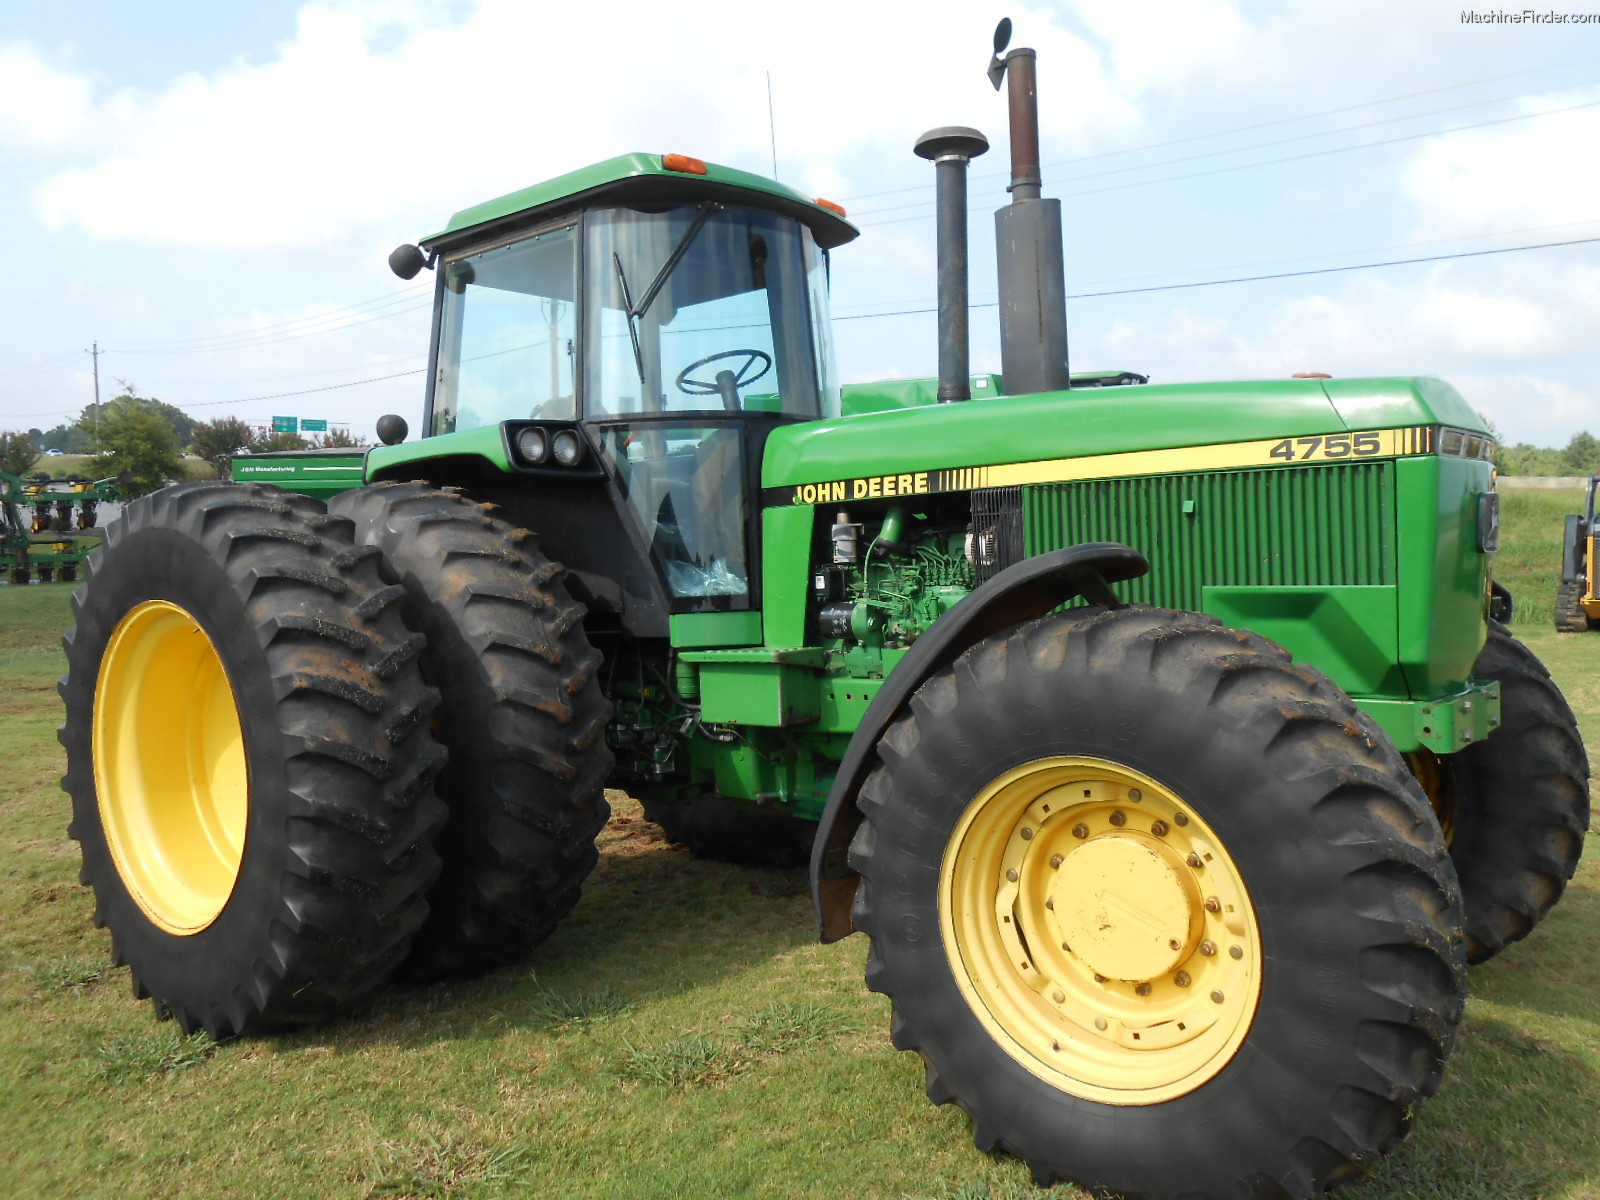 1991 John Deere 4755 Tractors - Row Crop (+100hp) - John ...